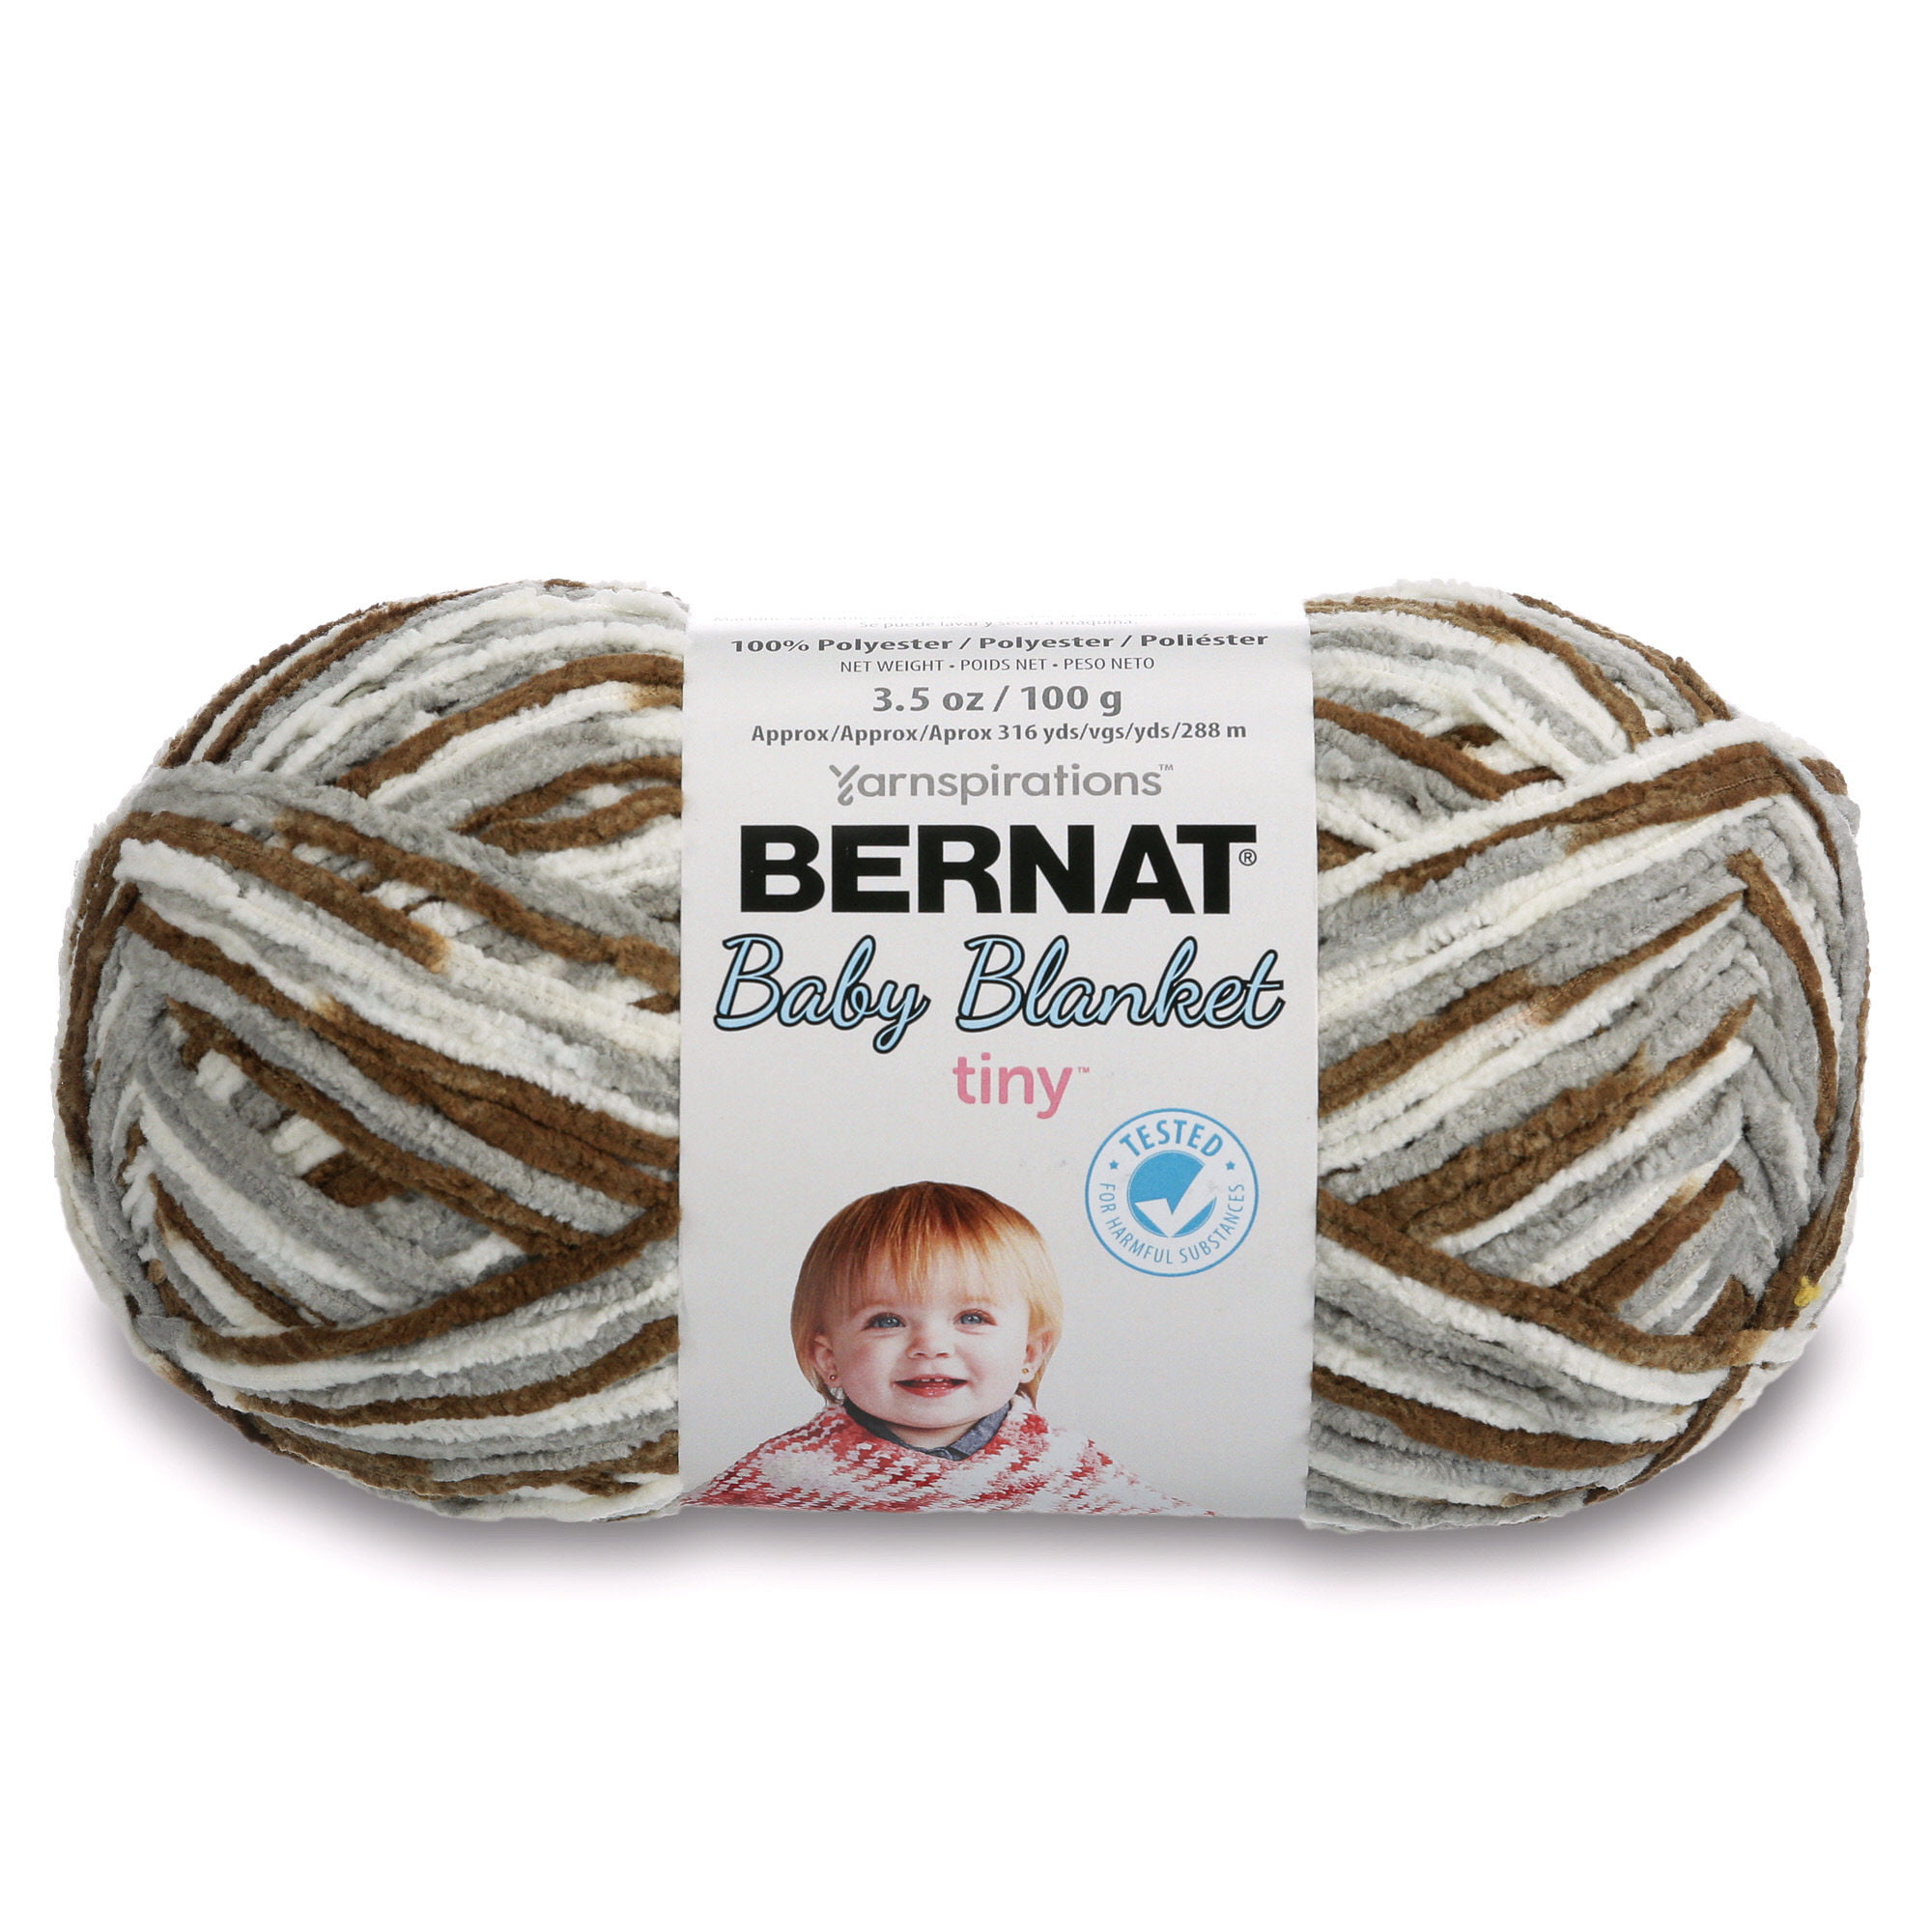 LITTLE ROSES Bernat Baby Blanket COLOR 04418 10.5 Oz258 Yards